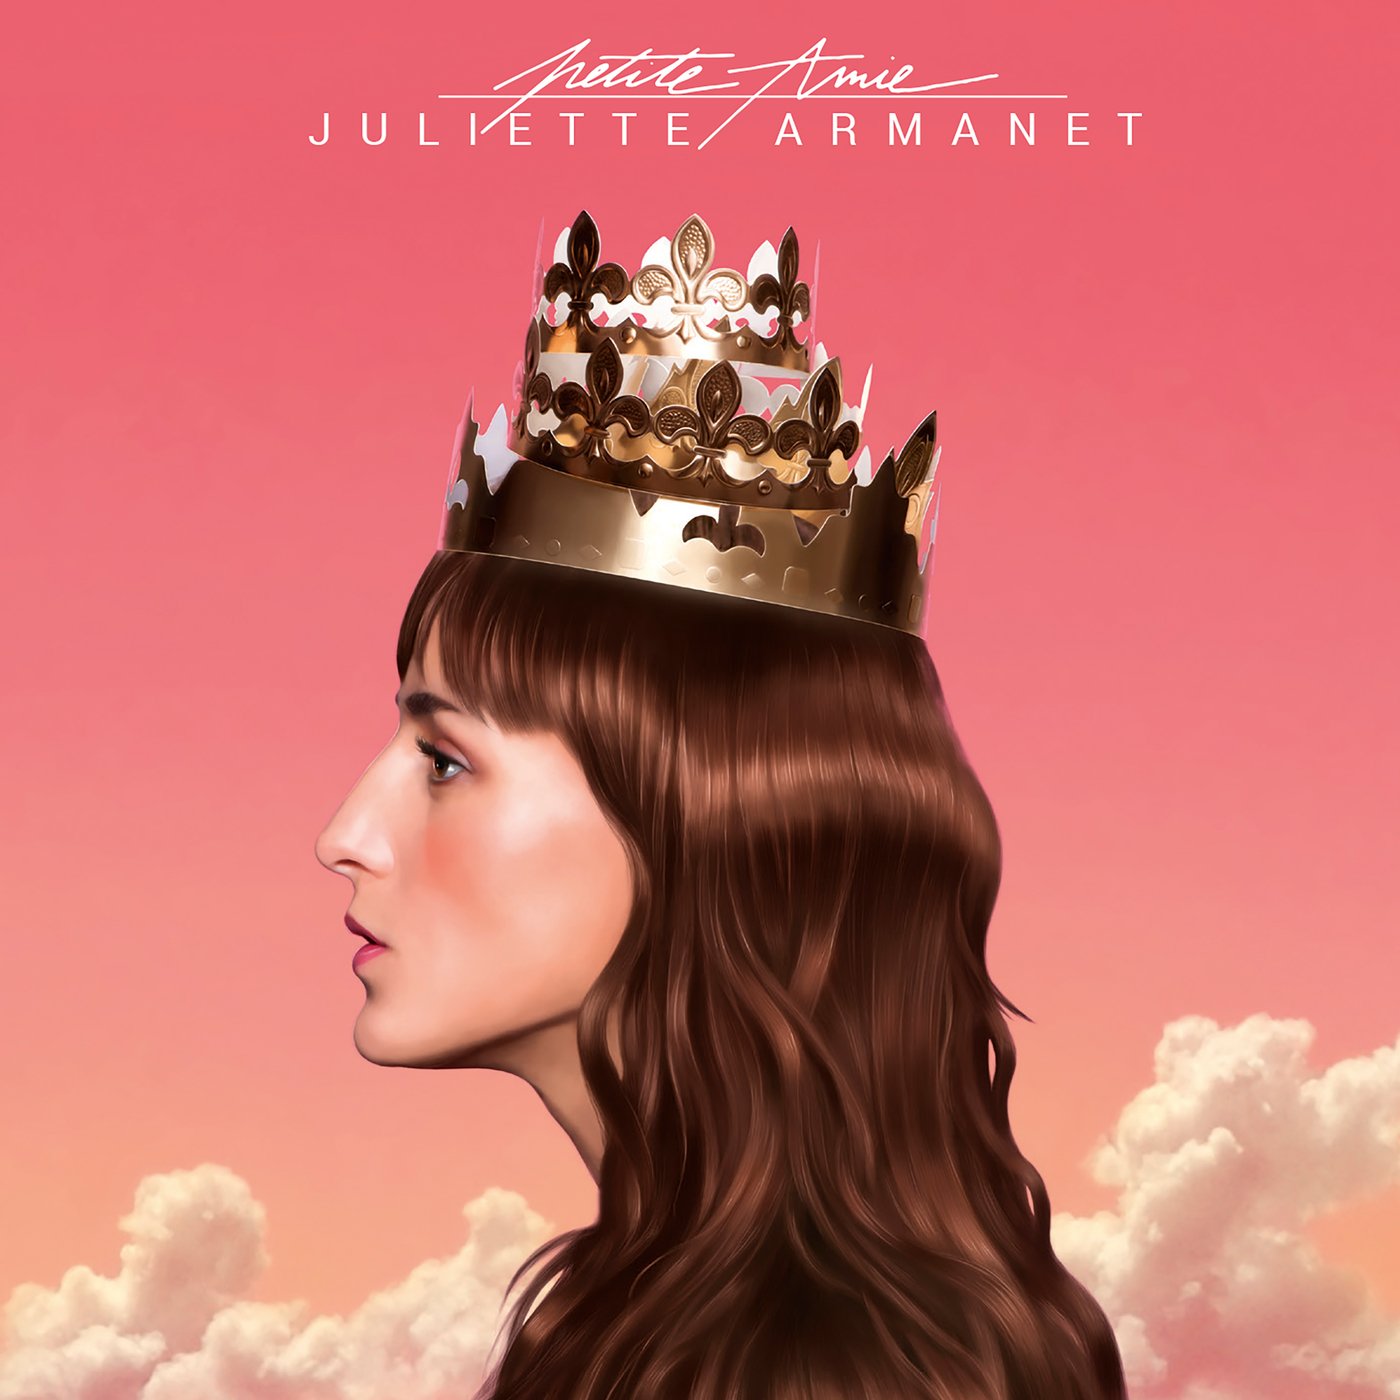 Juliette Armanet – Petite Amie (Edition Délice) (2018) [FLAC 24bit/44,1kHz]